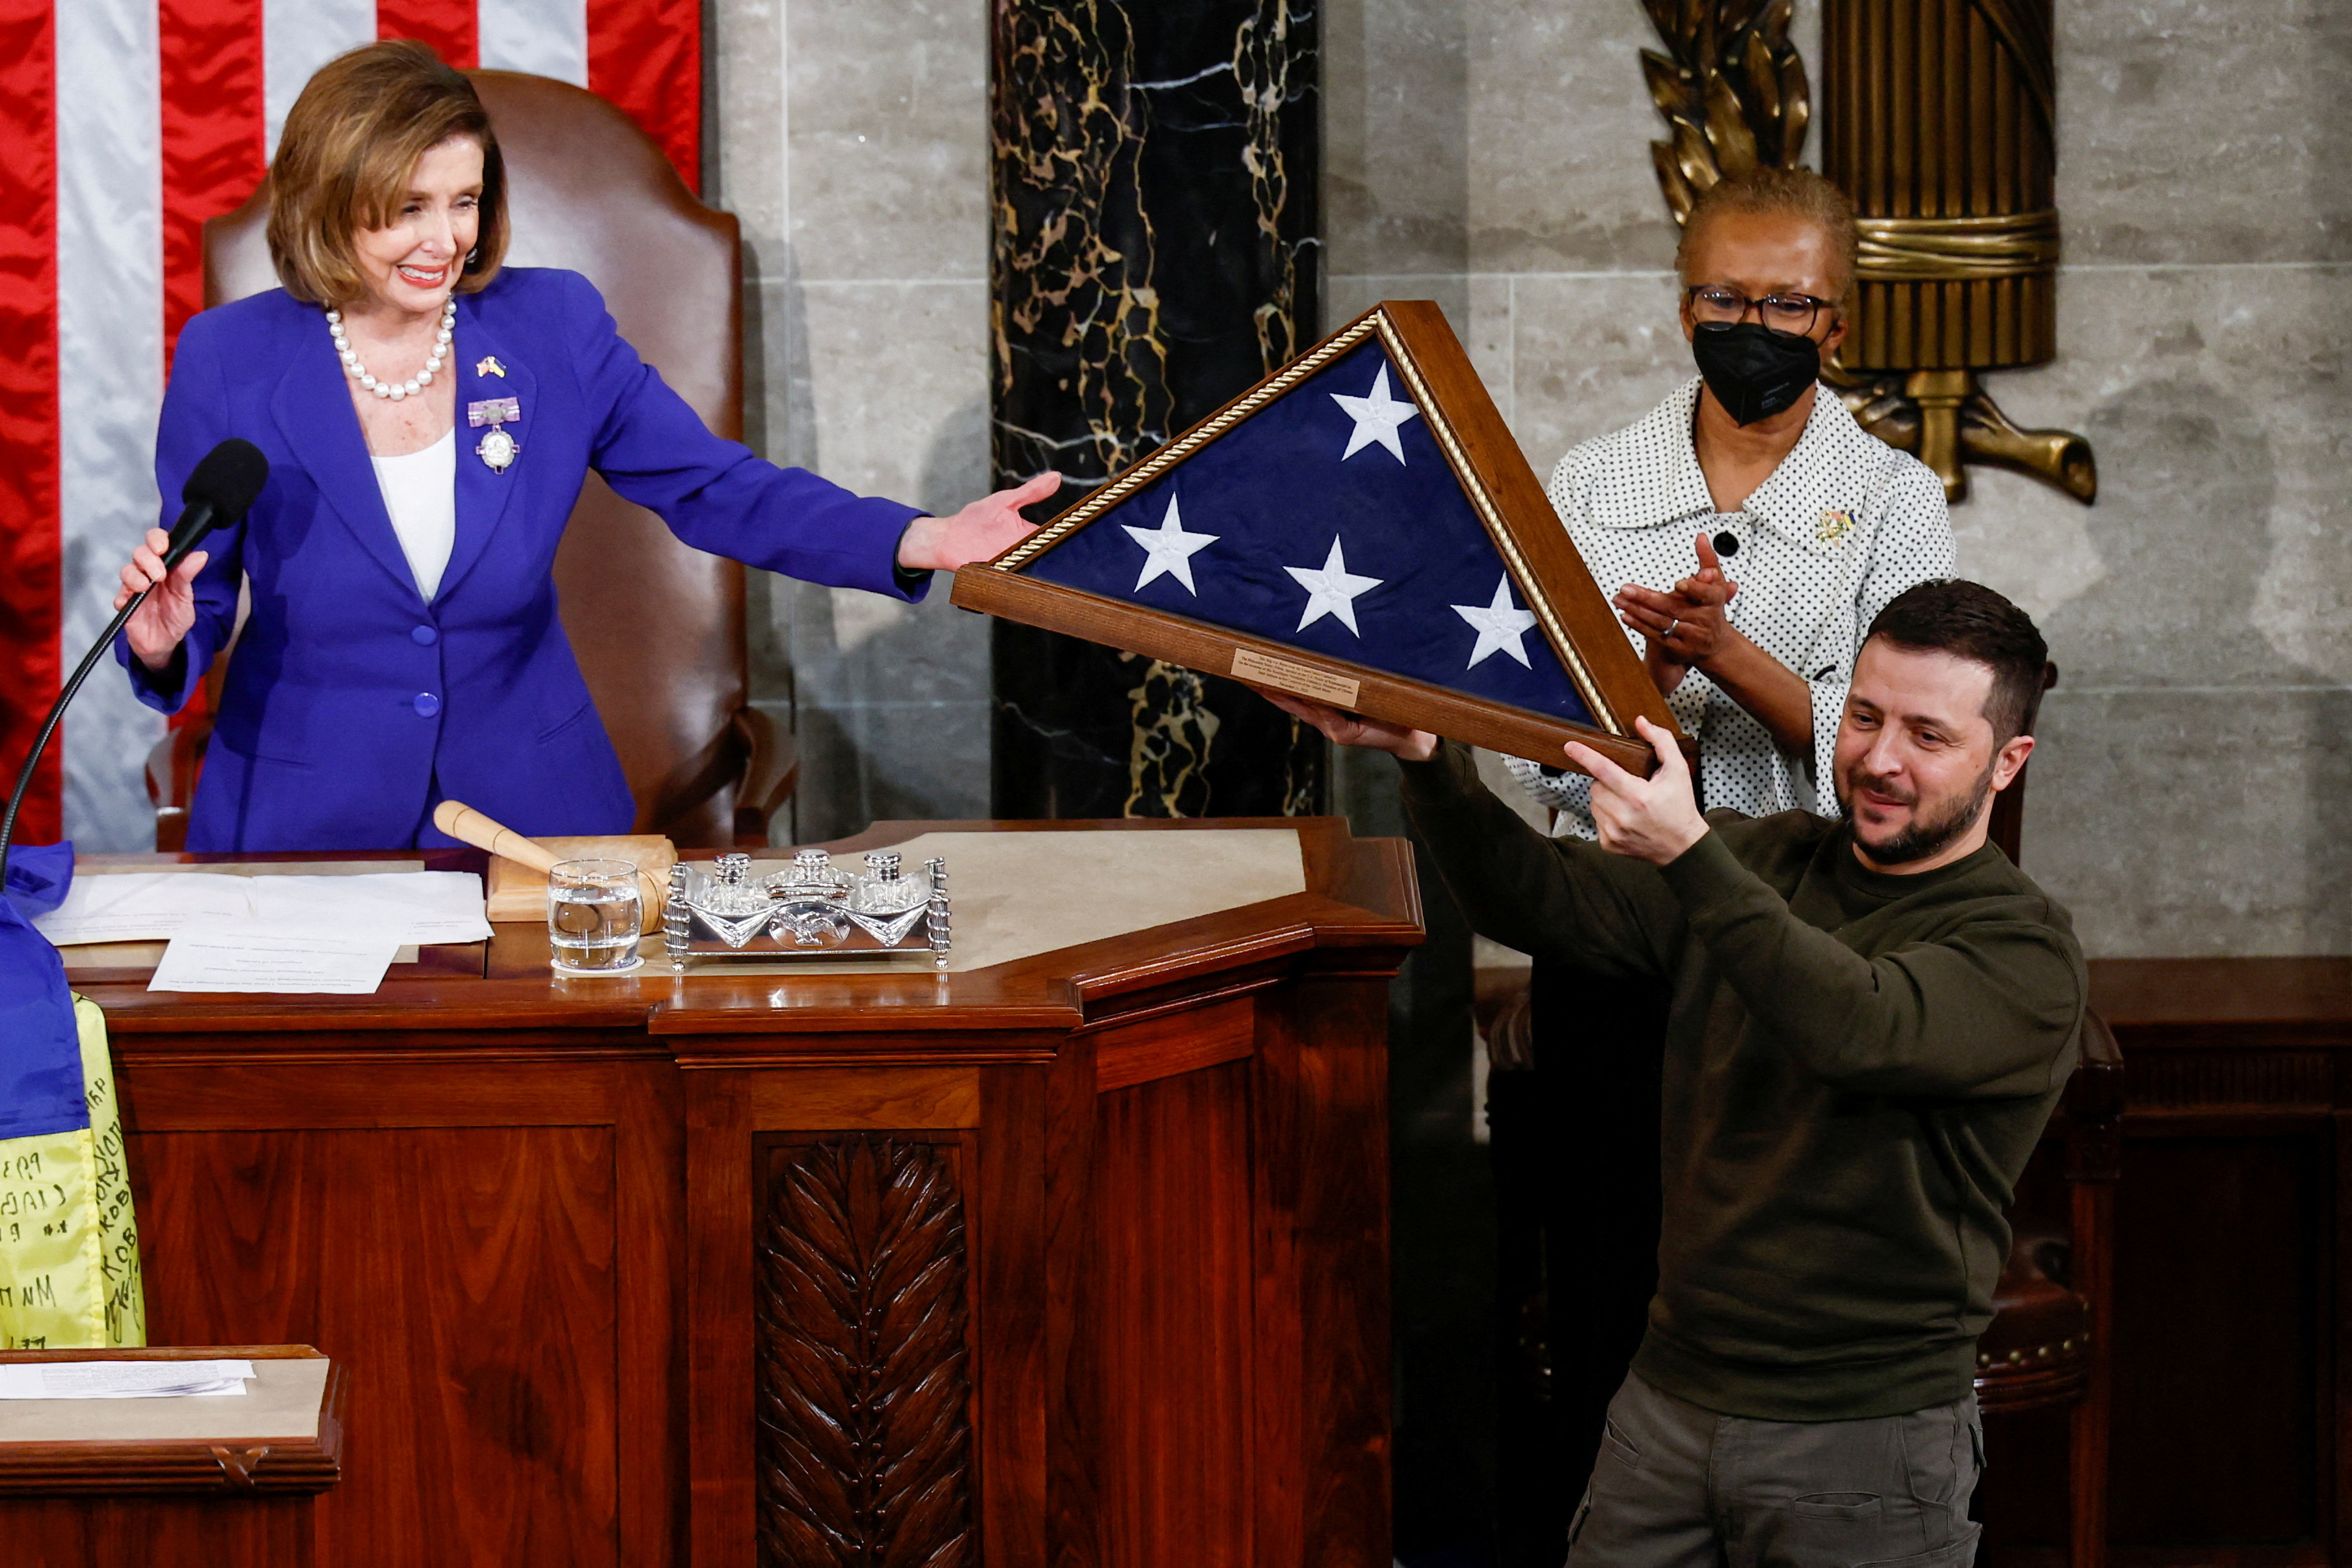 El presidente de Ucrania recibió la bandera de los Estados Unidos de manos de la presidenta de la Cámara de representantes, Nancy Pelosi. (REUTERS/Evelyn Hockstein)